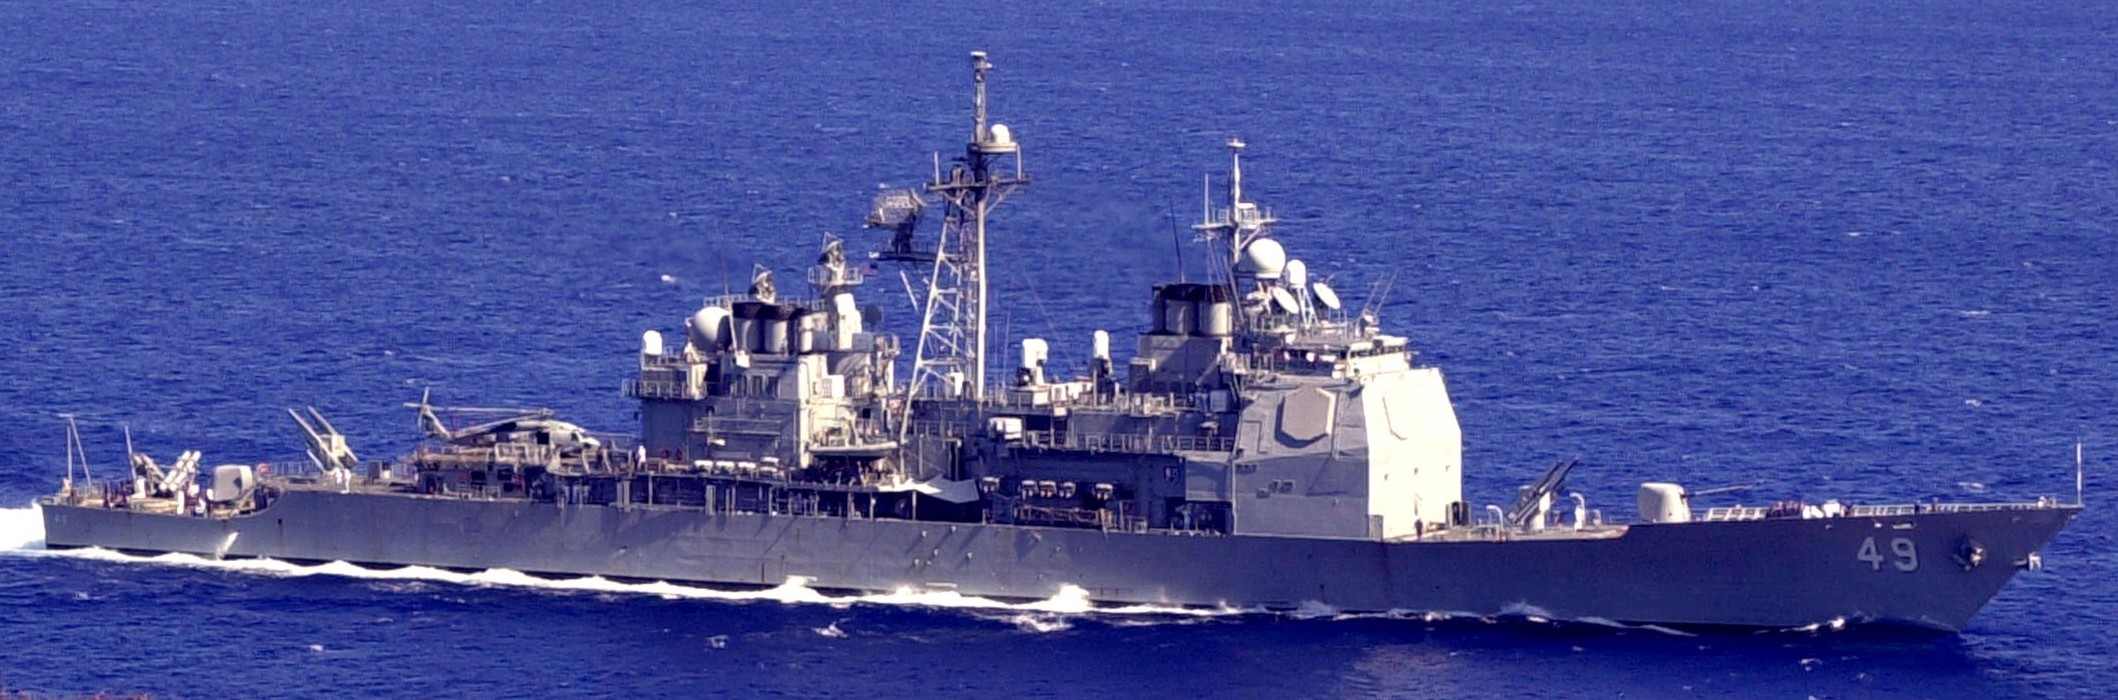 cg-49 uss vincennes ticonderoga class guided missile cruiser aegis us navy apra harbor guam 02